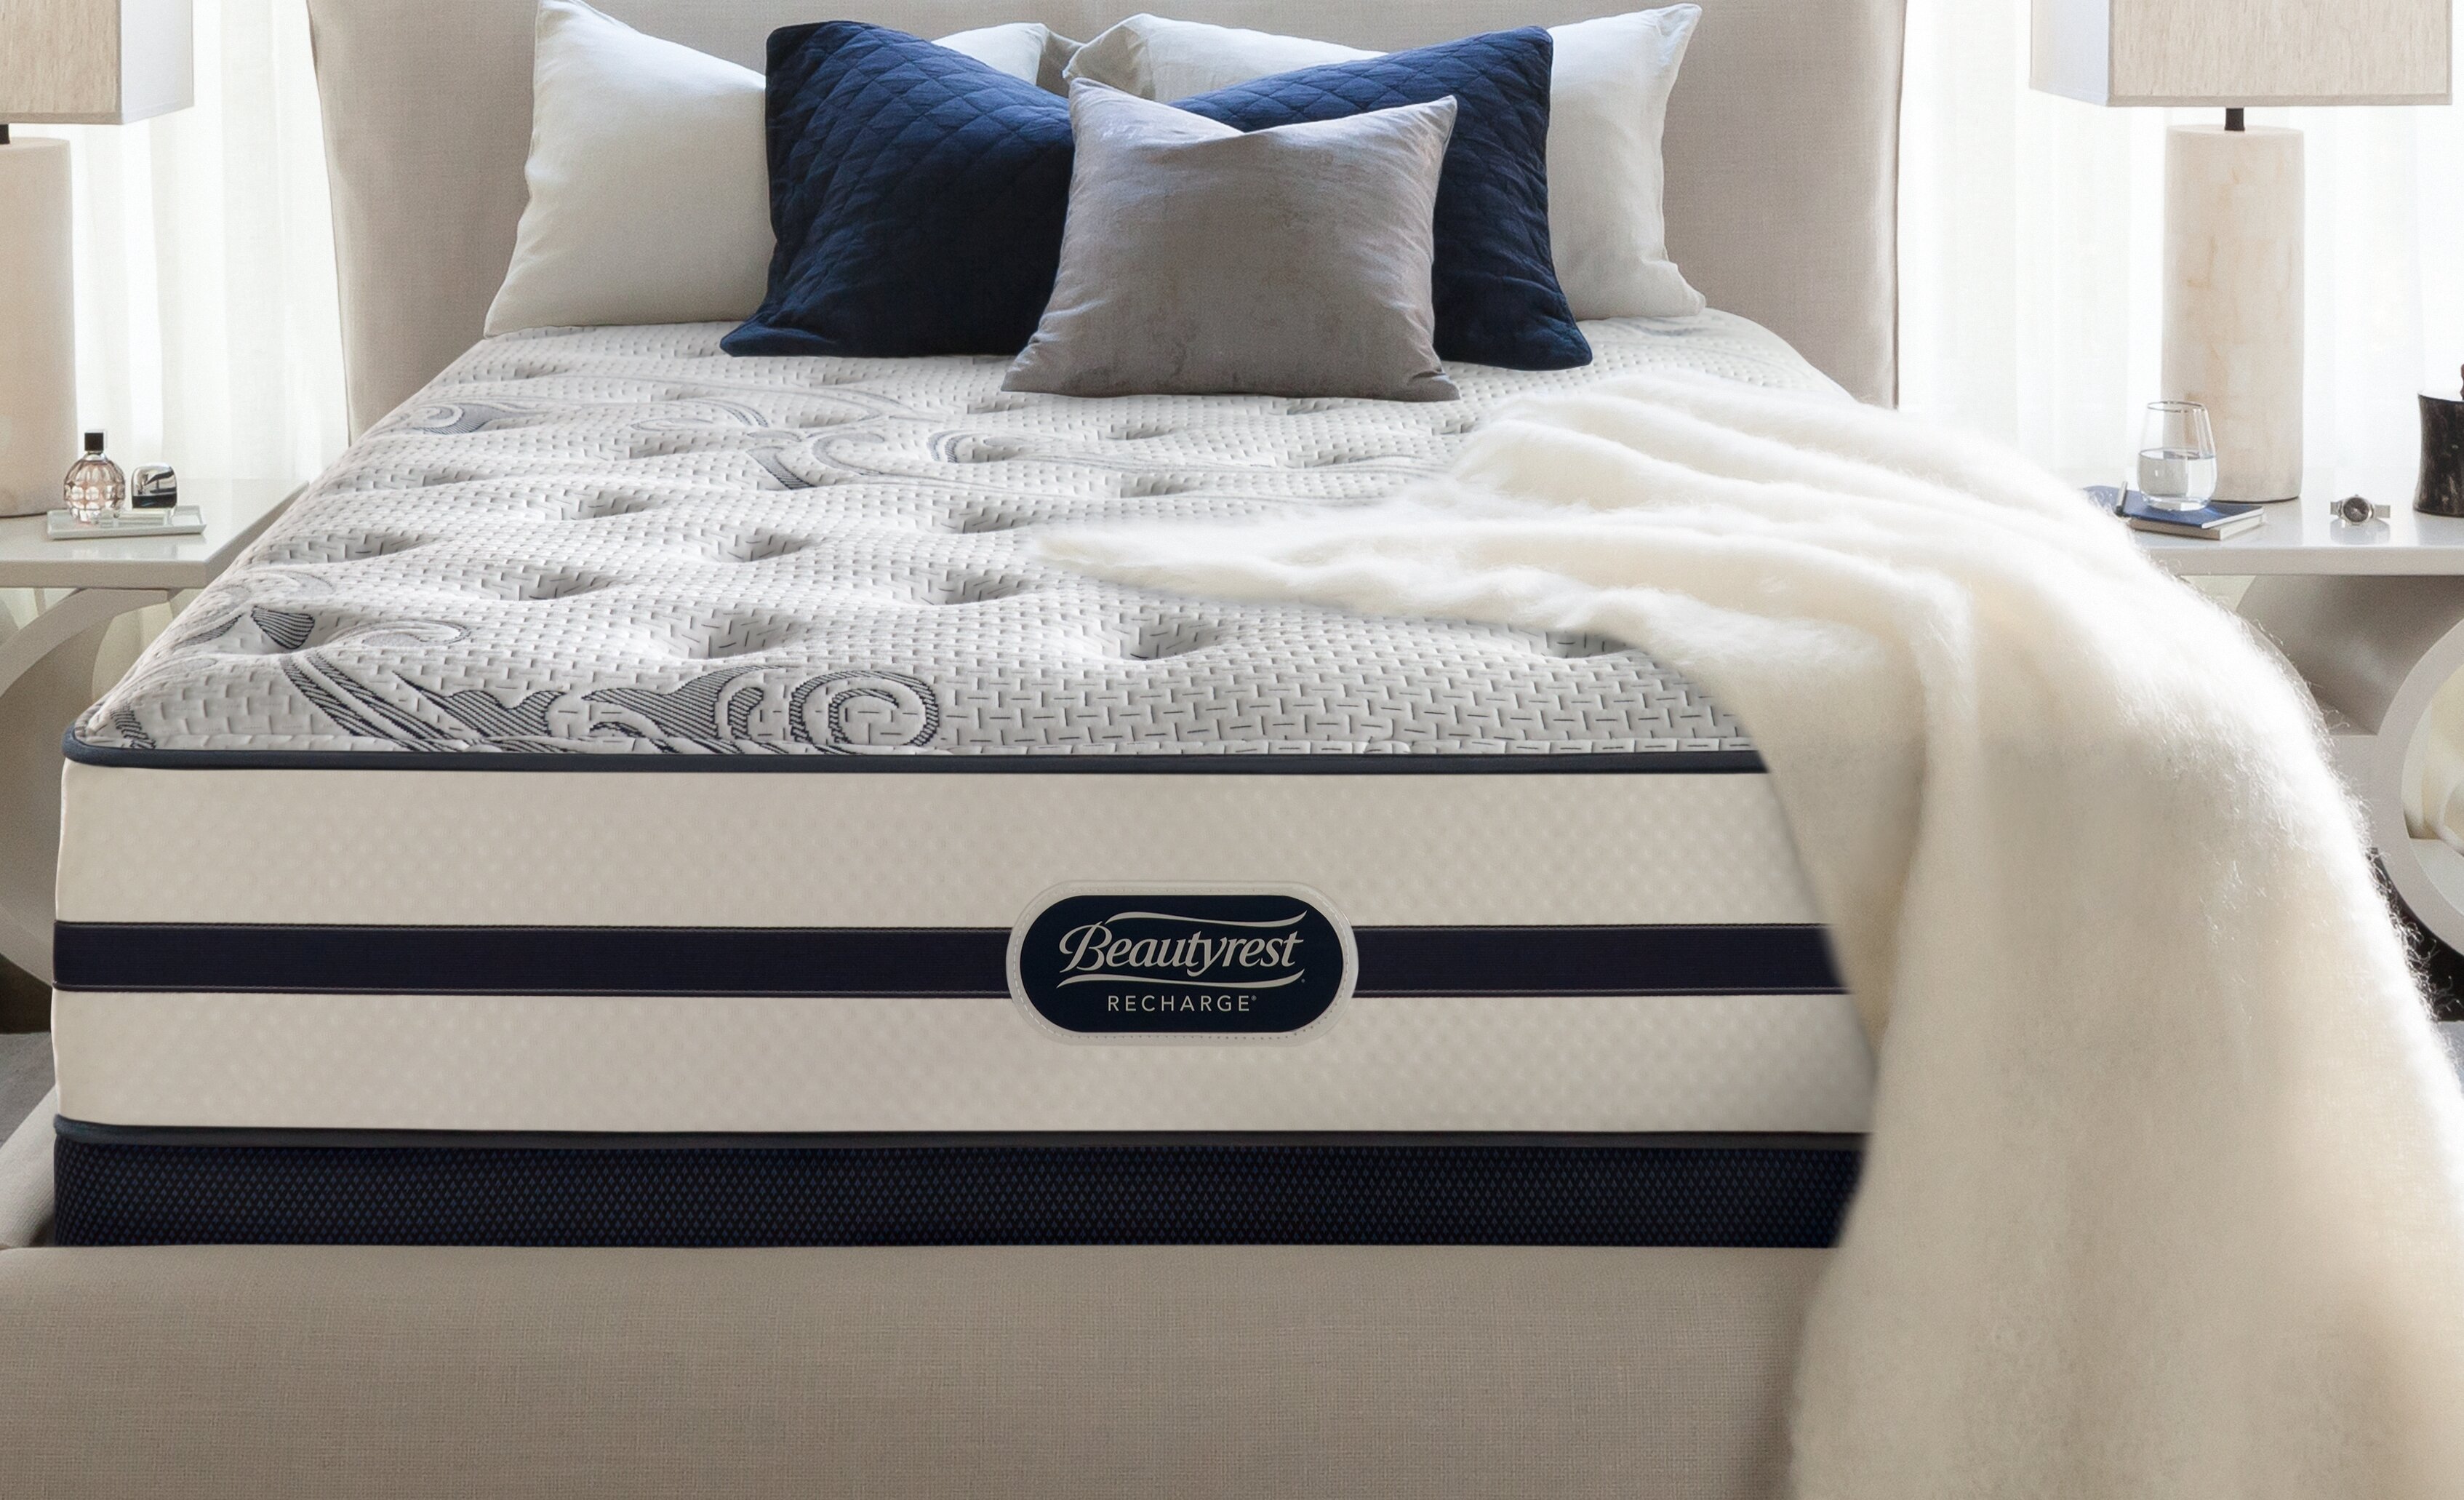 beautyrest recharge firm mattress reviews